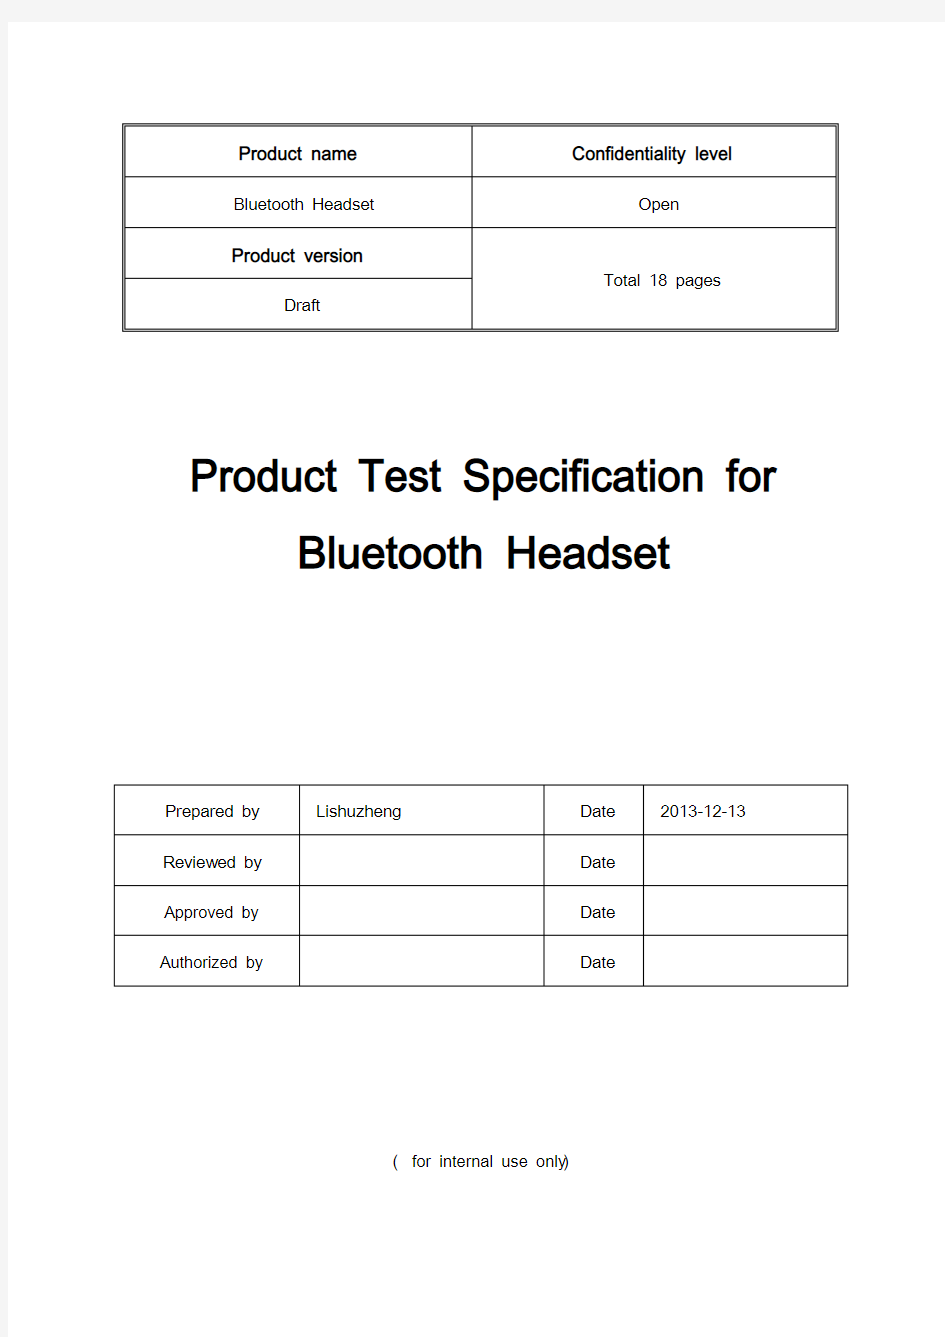 蓝牙耳机生产测试方法及标准